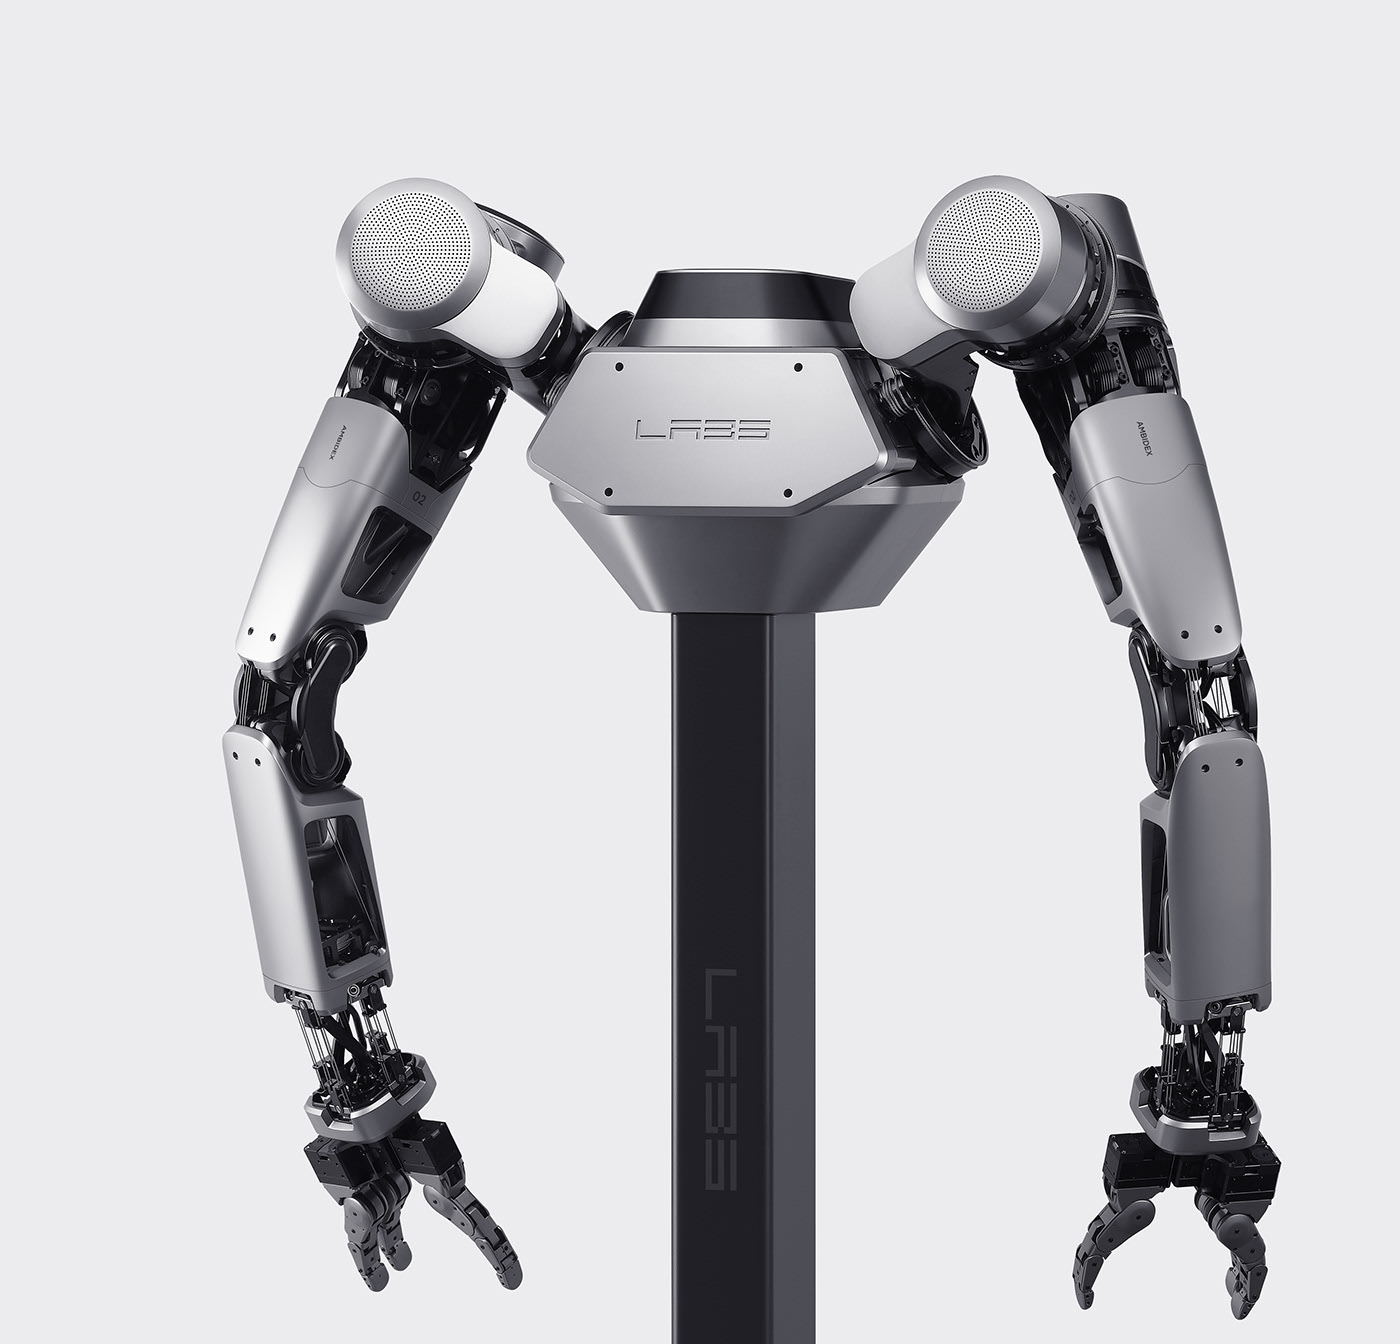 Oculus | Long headed——未来感与科幻感十足的机器人设计 - 普象网